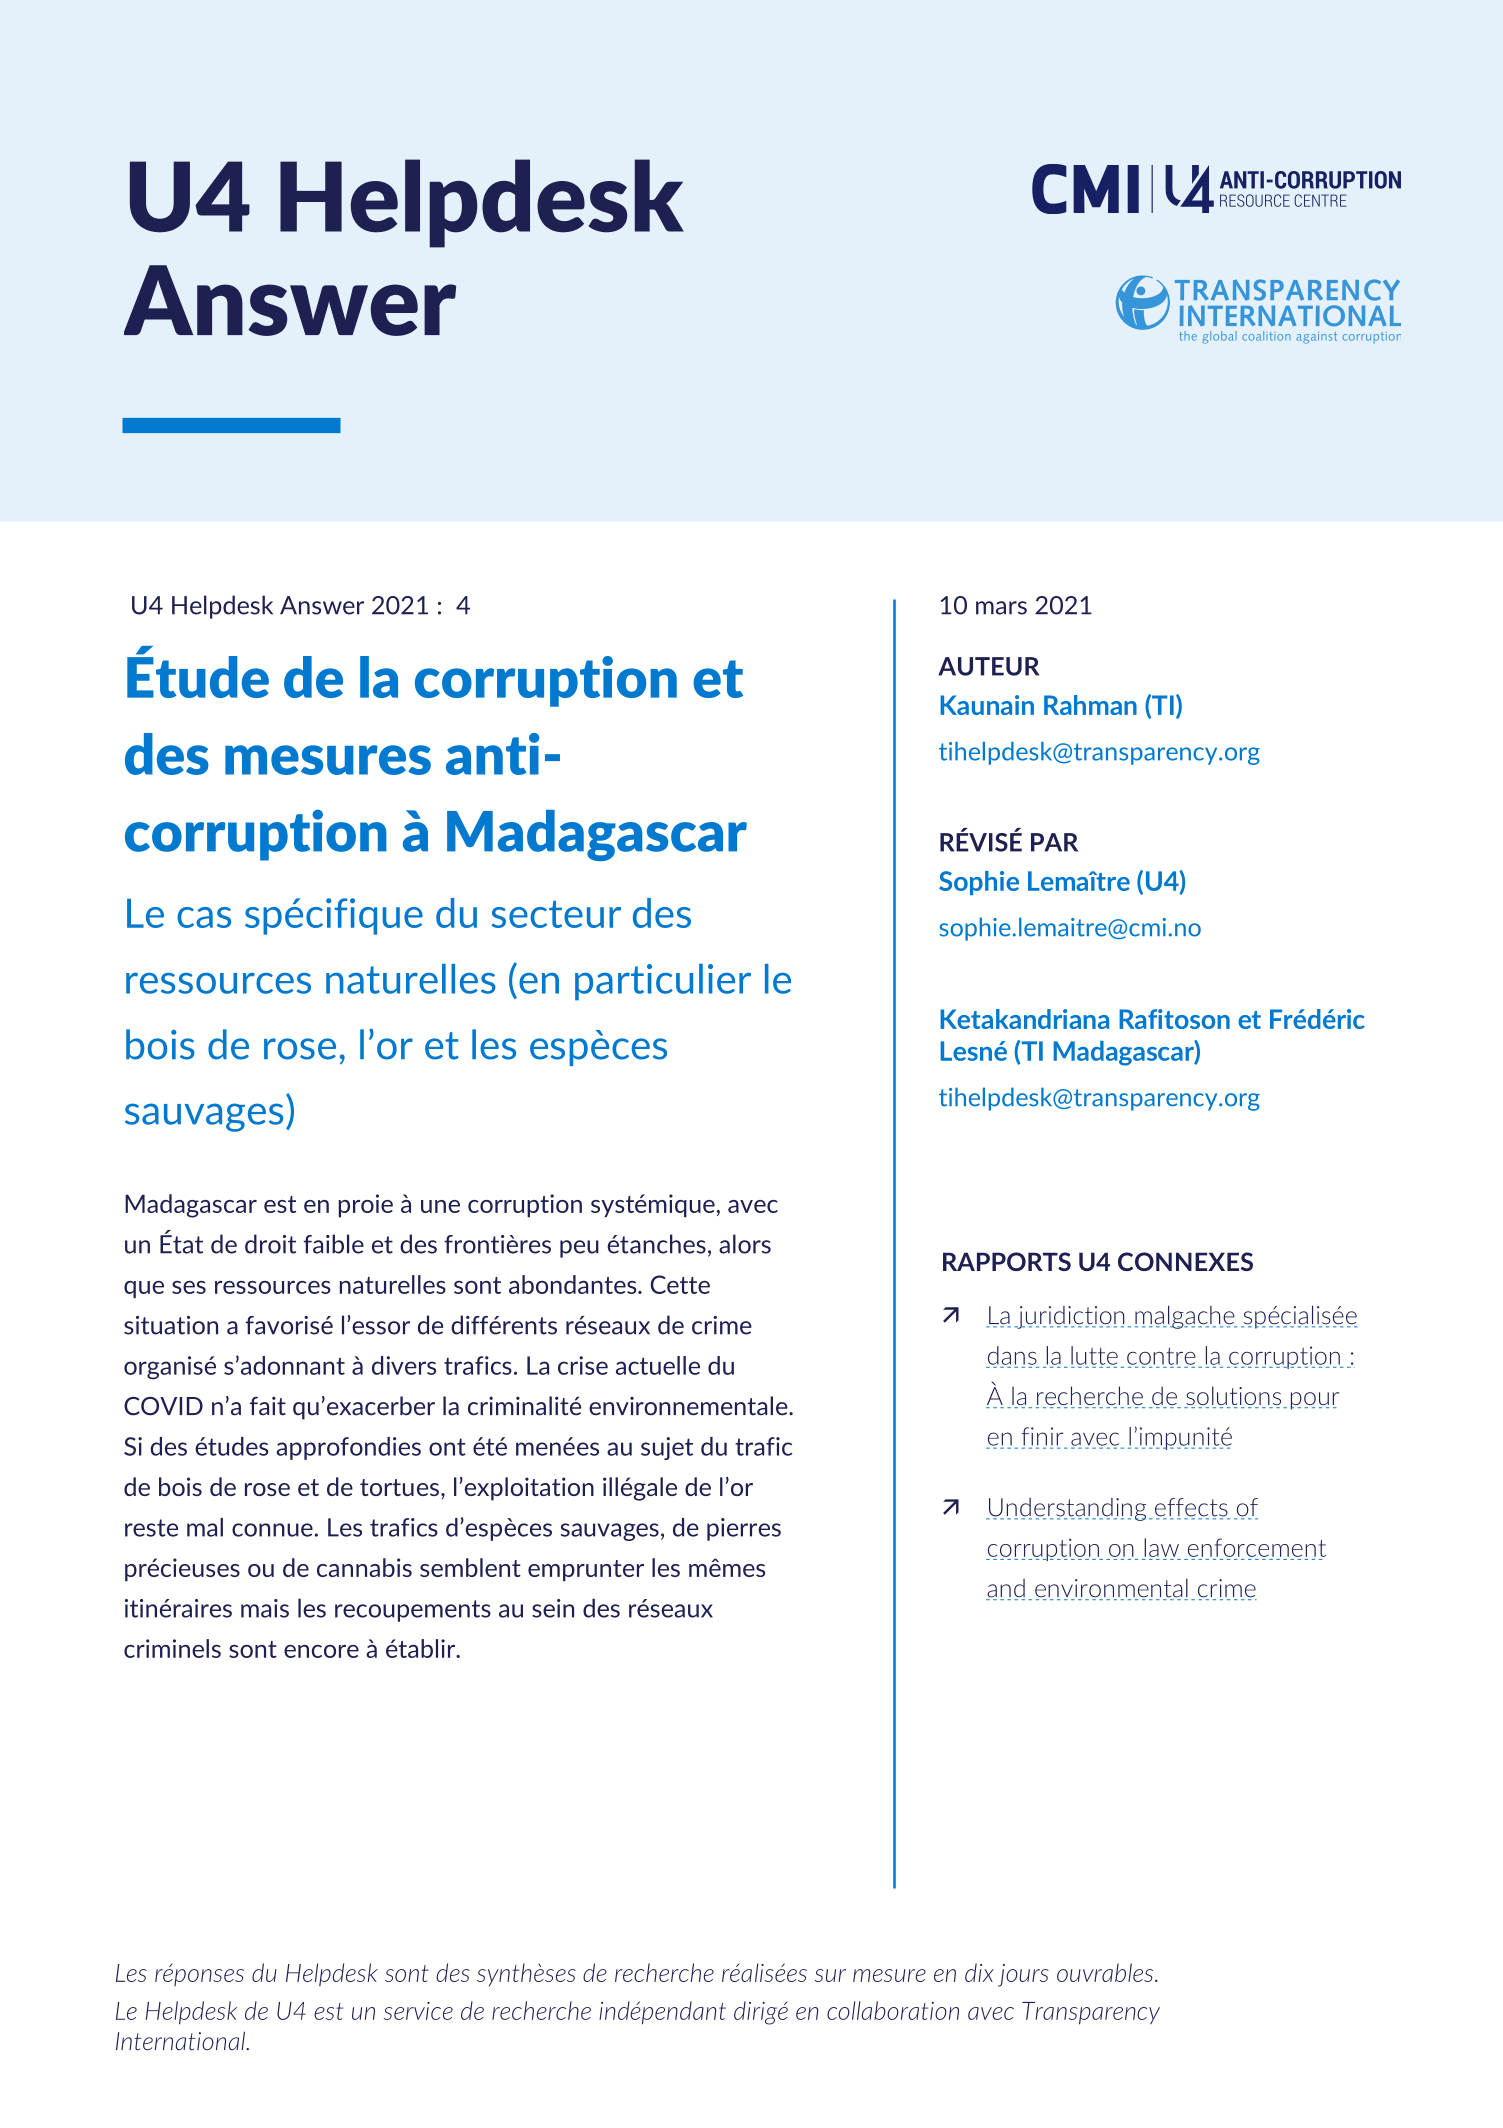 Étude de la corruption et des mesures anti-corruption à Madagascar